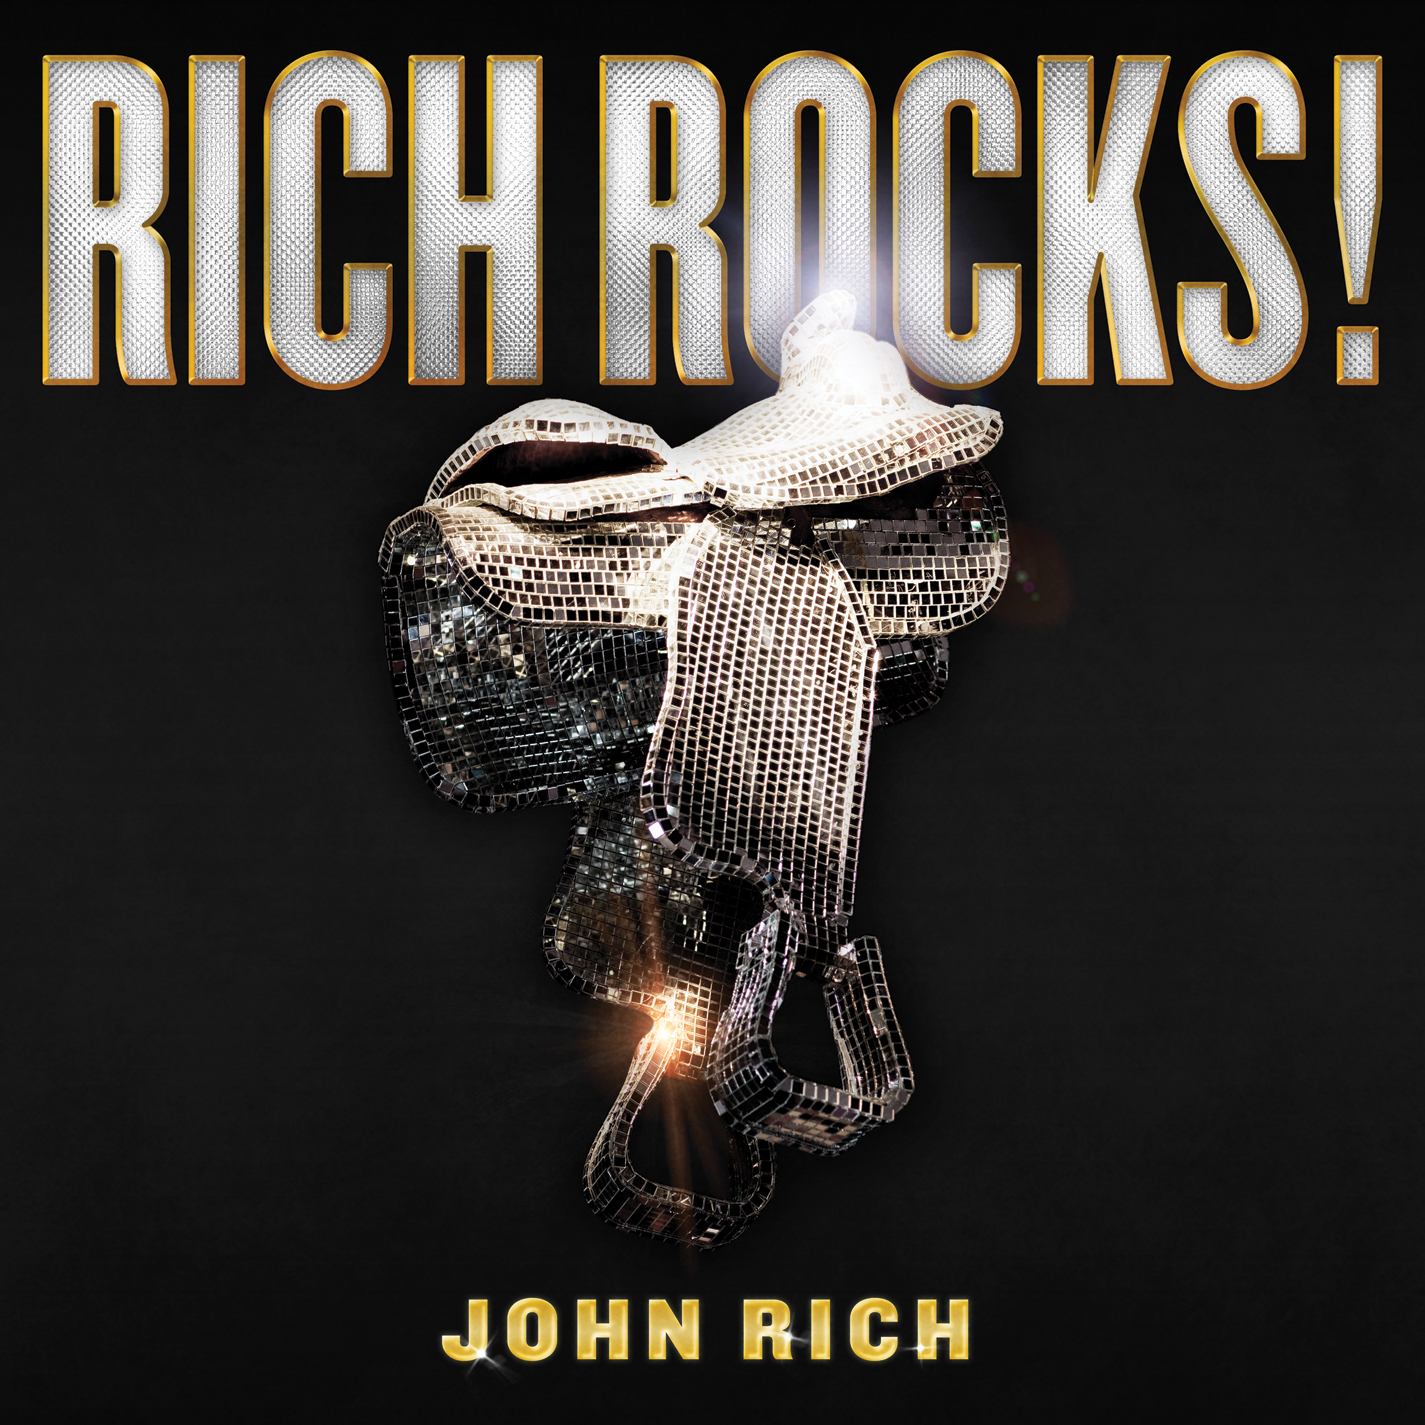 John Rich Debuts New Song Shut Up About Politics Written With Fox And Friends Host Greg Gutfield Nashville Music Guide